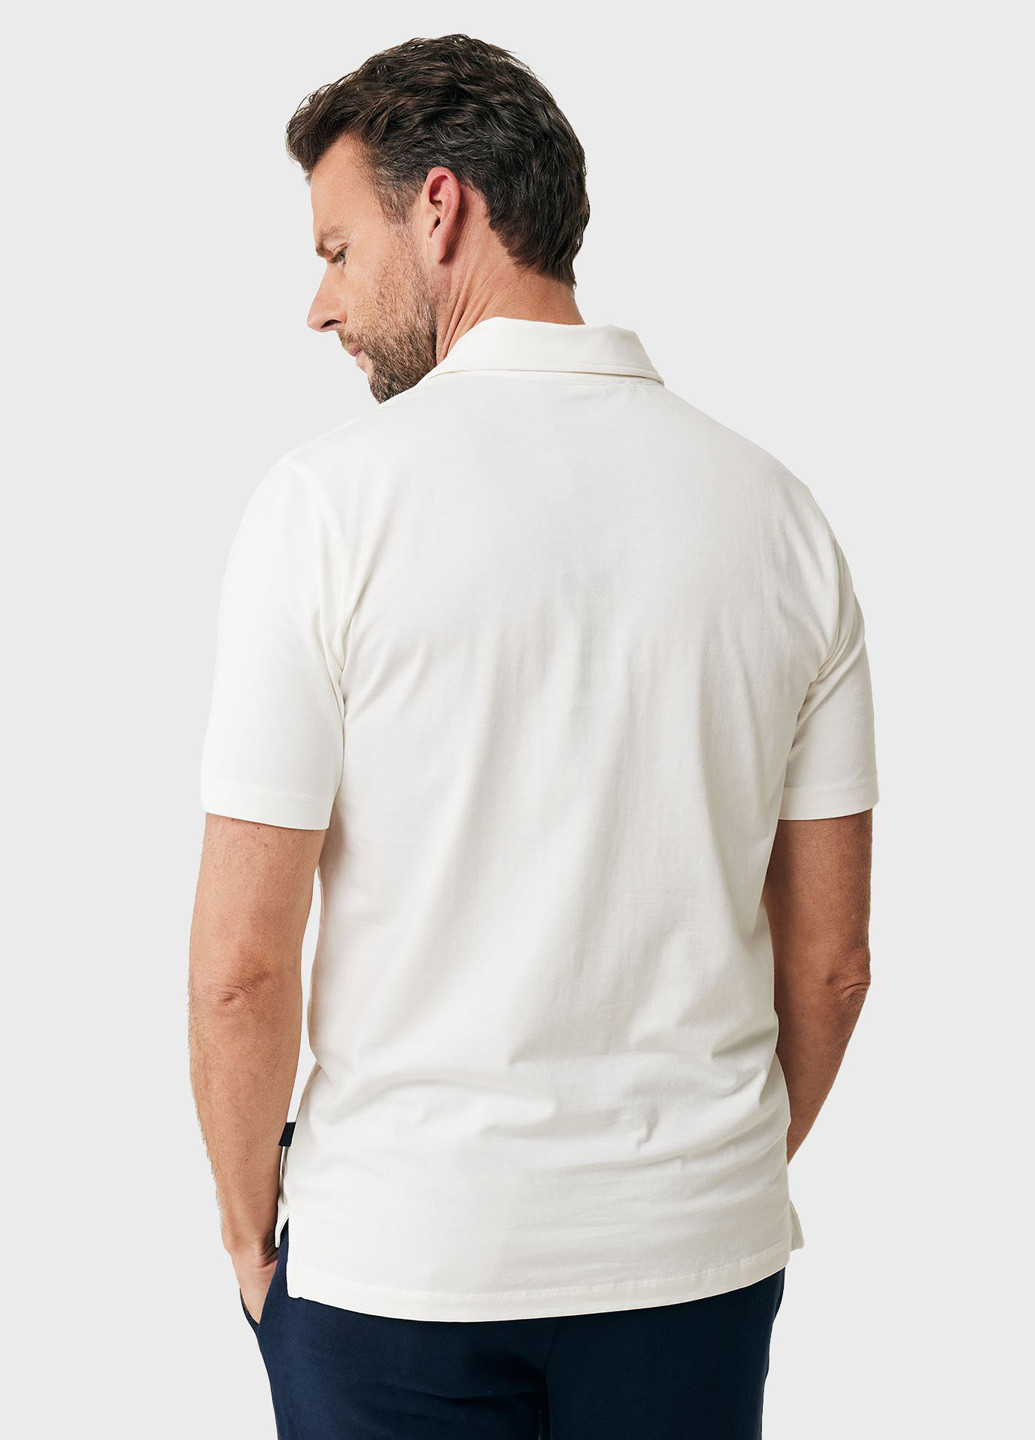 Белая футболка-поло для мужчин Mexx однотонная